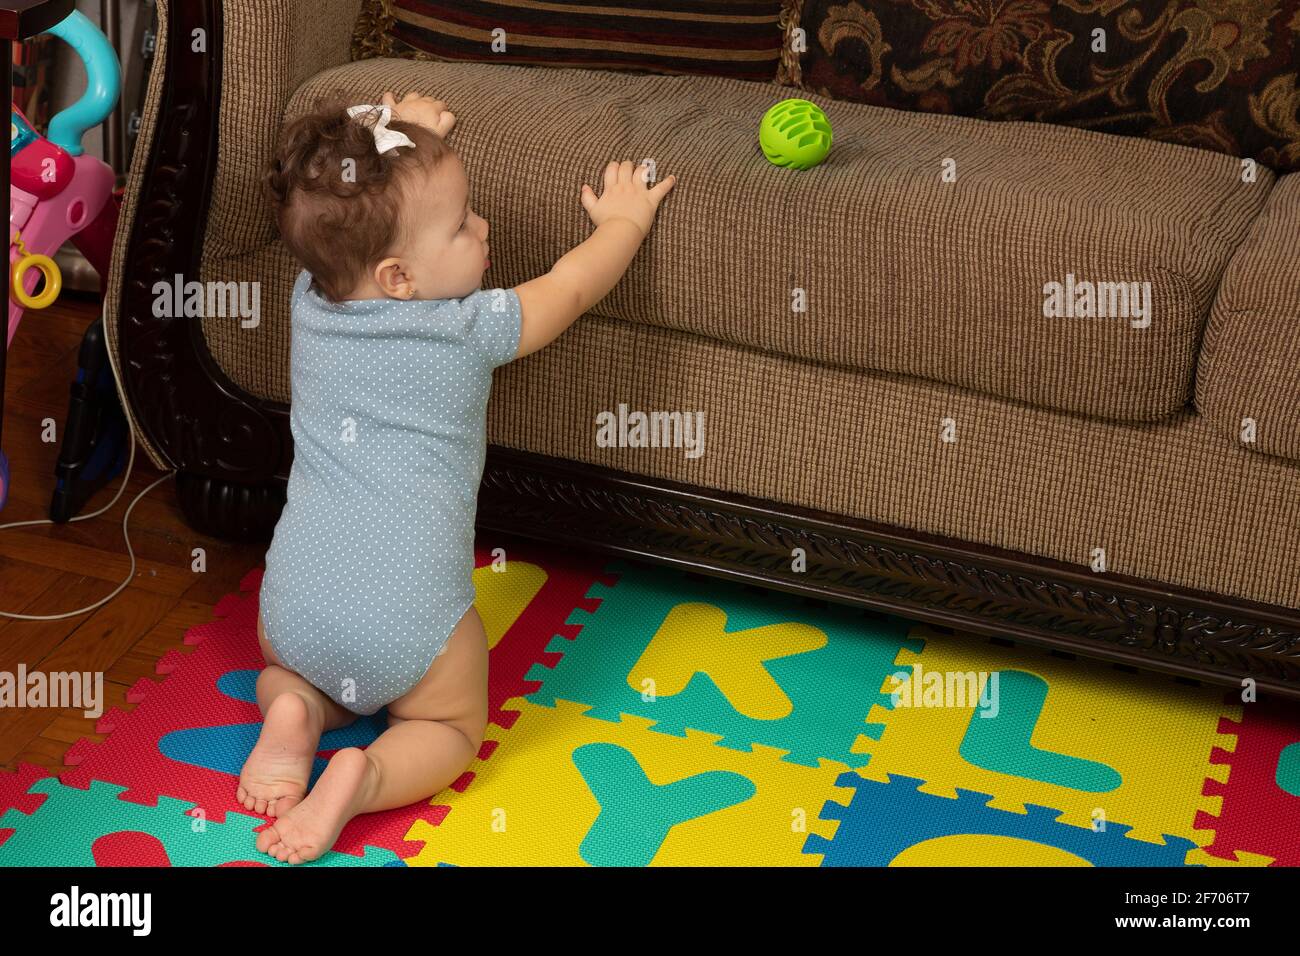 bambina di 7 mesi, inginocchiata sul divano interessata alla palla sul cuscino, pronta a tirarsi in piedi per raggiungerla Foto Stock